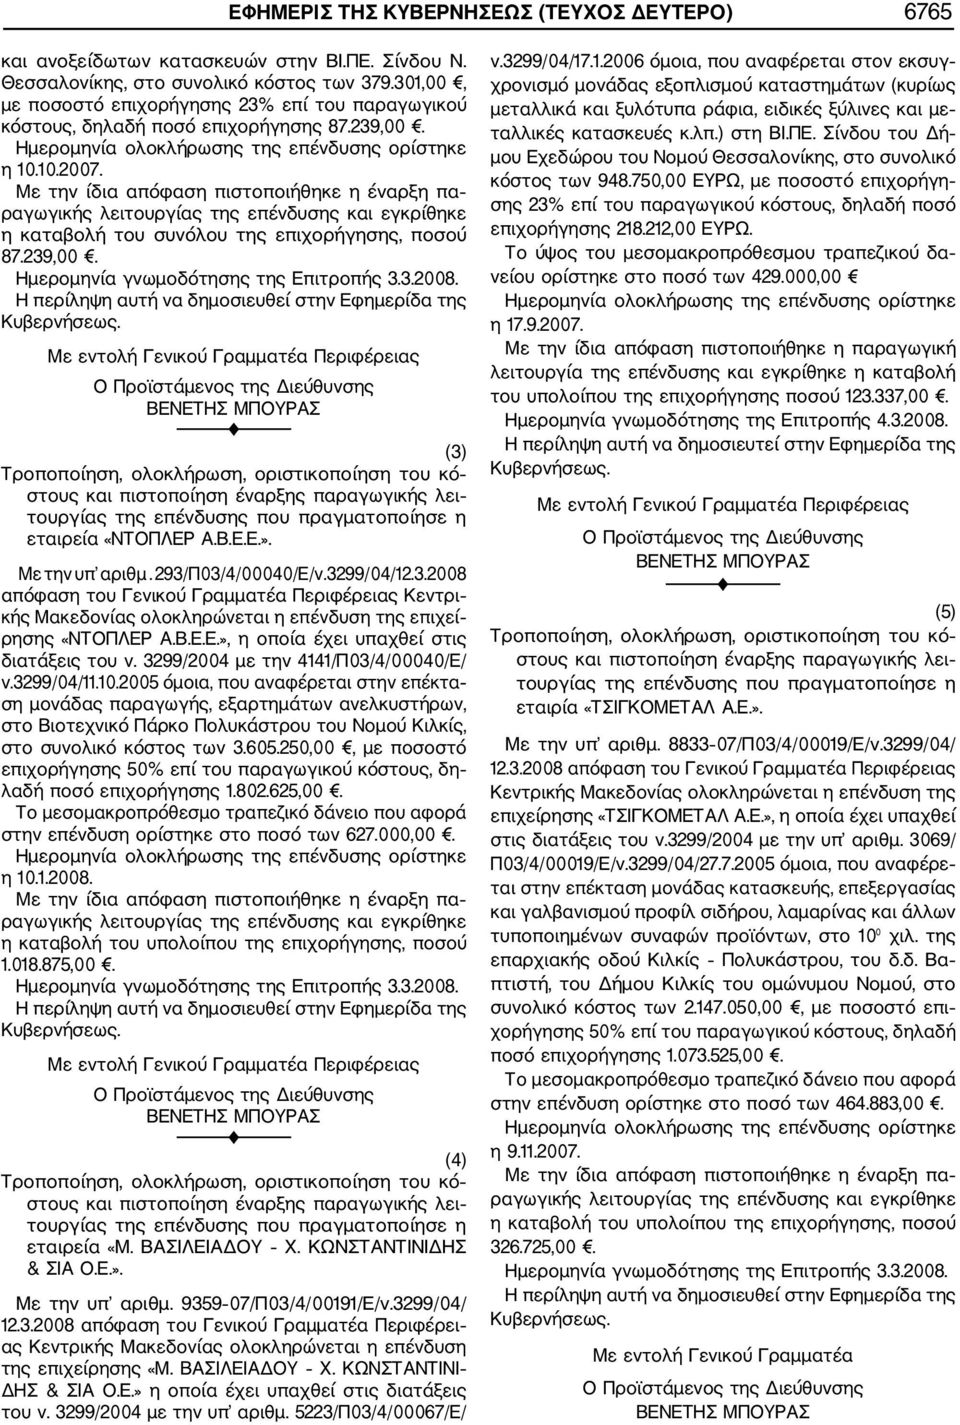 Ε.Ε.». Με την υπ αριθμ. 293/Π03/4/00040/Ε/ν.3299/04/12.3.2008 απόφαση του Γενικού Γραμματέα Περιφέρειας Κεντρι κής Μακεδονίας ολοκληρώνεται η επένδυση της επιχεί ρησης «ΝΤΟΠΛΕΡ Α.Β.Ε.Ε.», η οποία έχει υπαχθεί στις διατάξεις του ν.